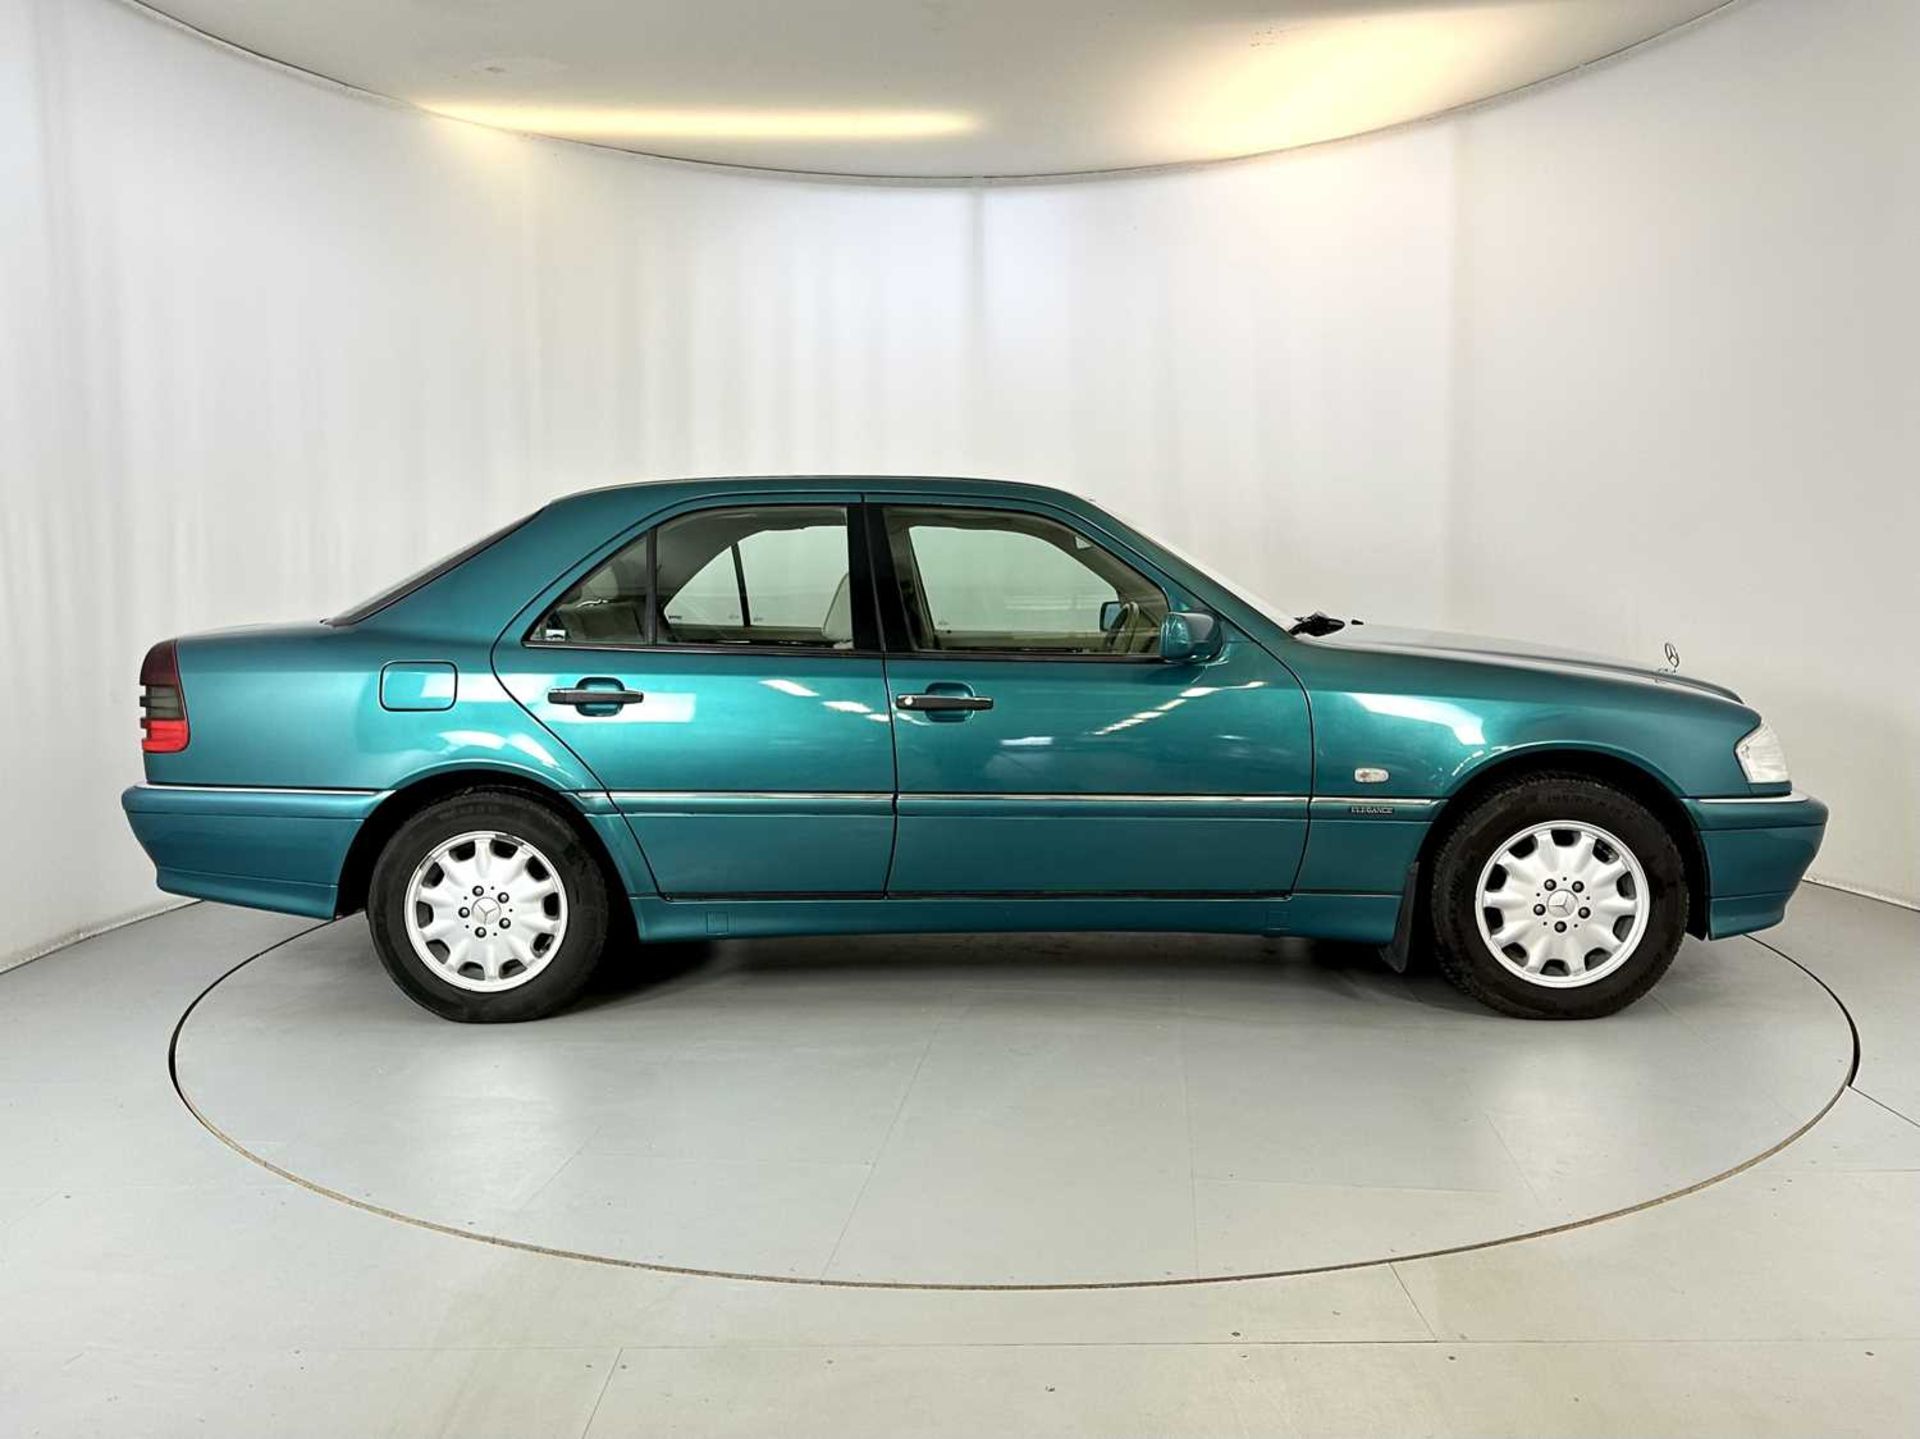 1998 Mercedes-Benz C200 - Image 11 of 34